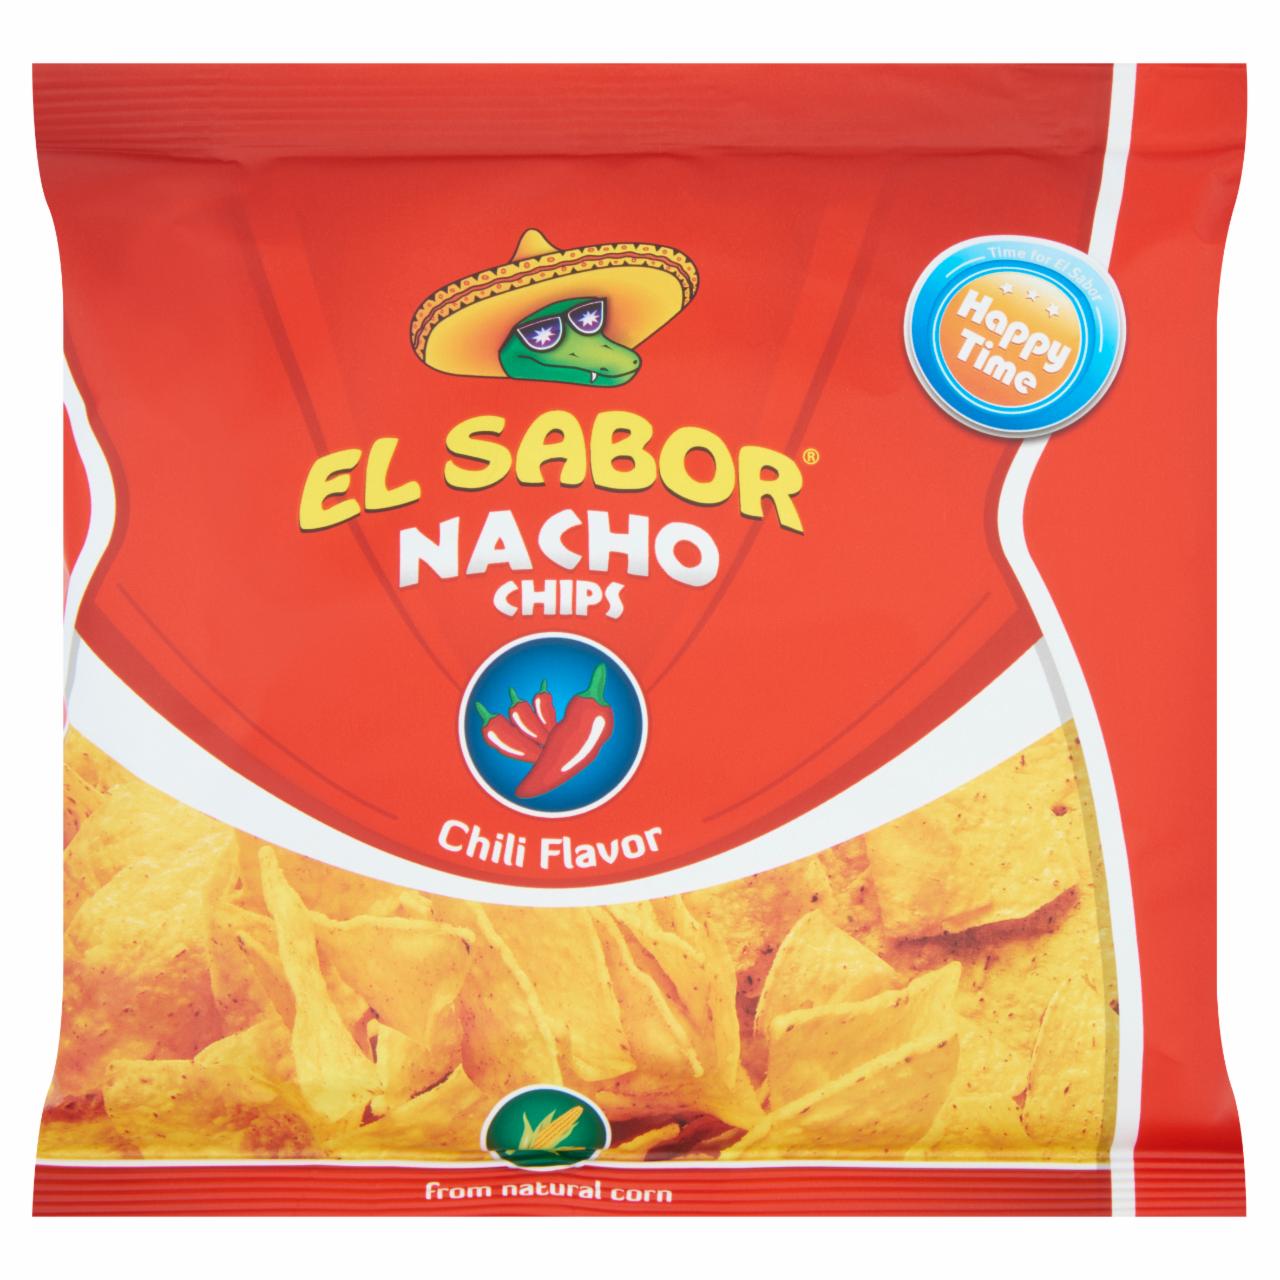 Képek - El Sabor chilis ízesítésű nacho chips 65 g